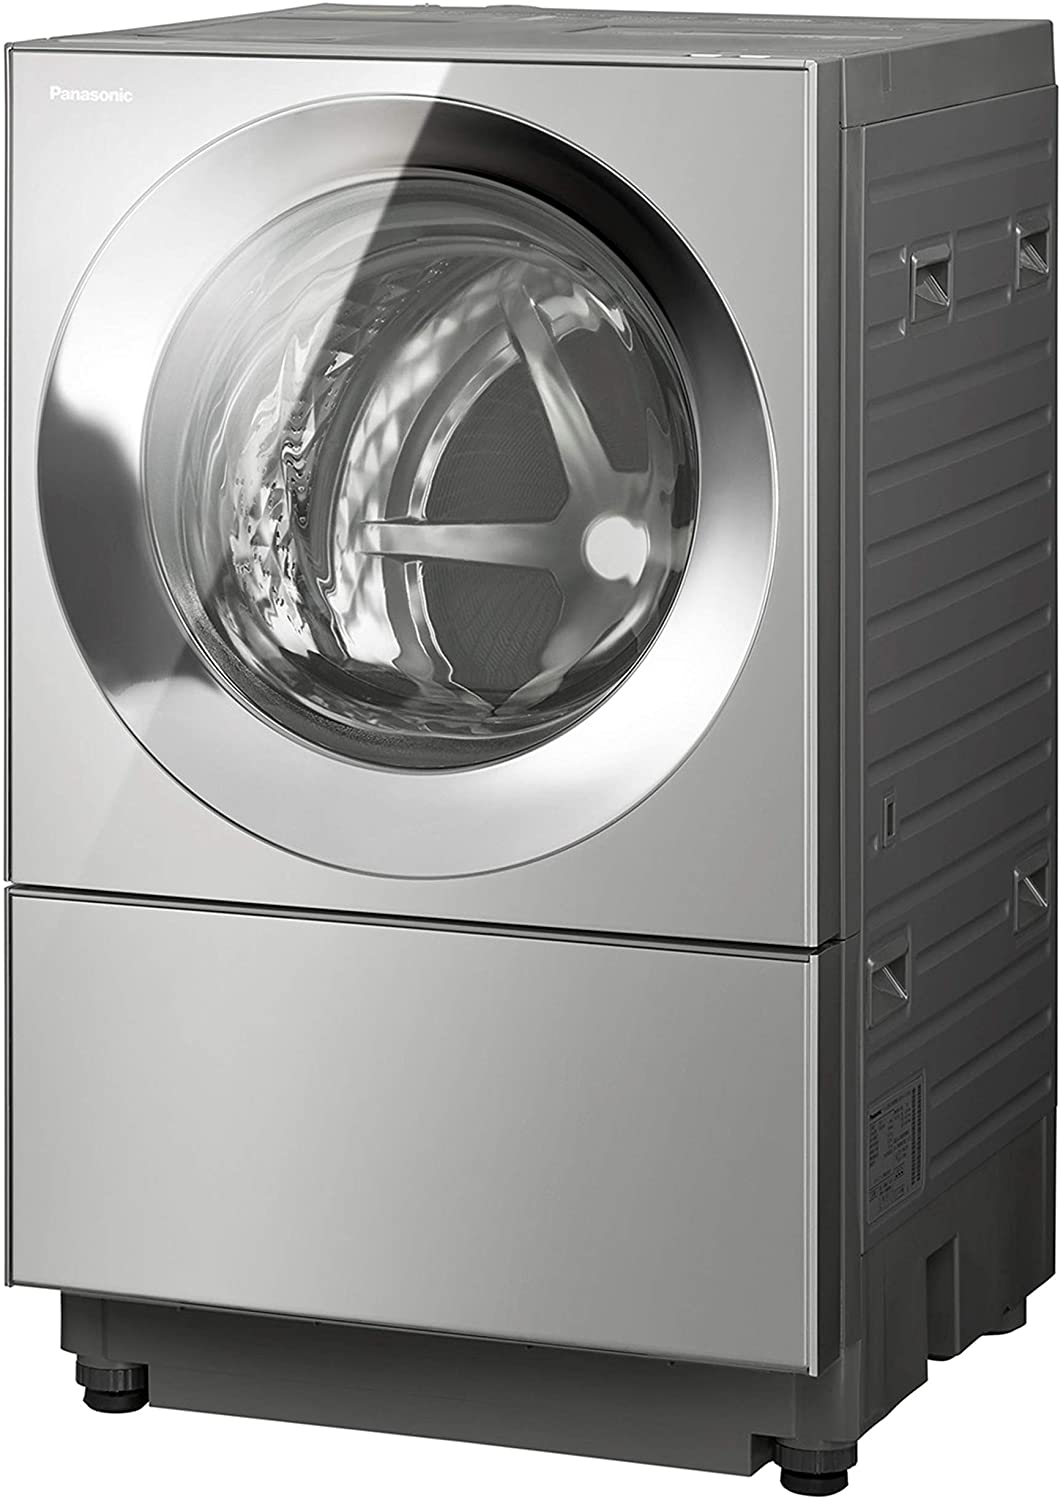 ドラム式洗濯機おすすめ商品：Panasonic(パナソニック) キューブル ななめドラム洗濯乾燥機 NA-VG2400